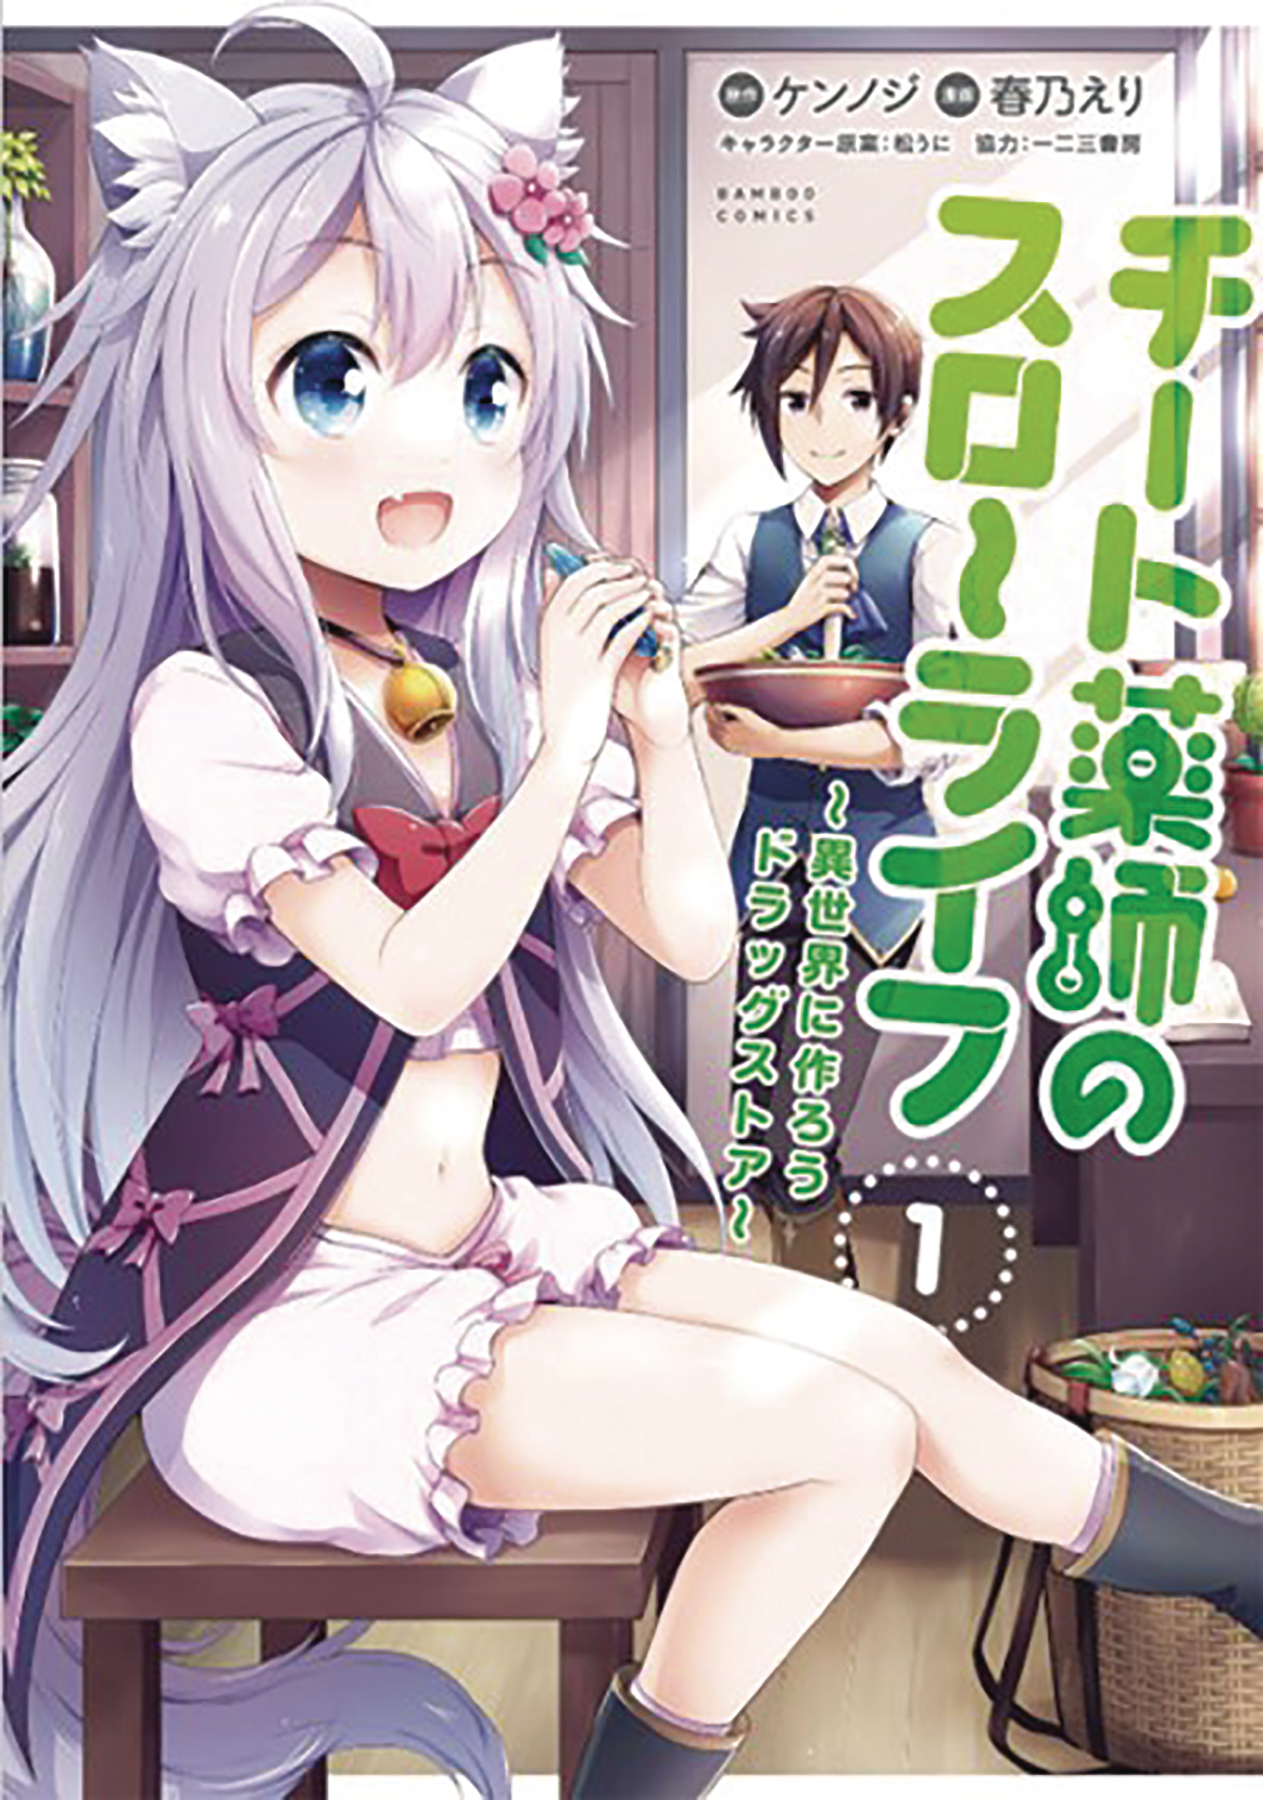 Drugstore in Another World Cheat Pharmacist Manga Volume 1